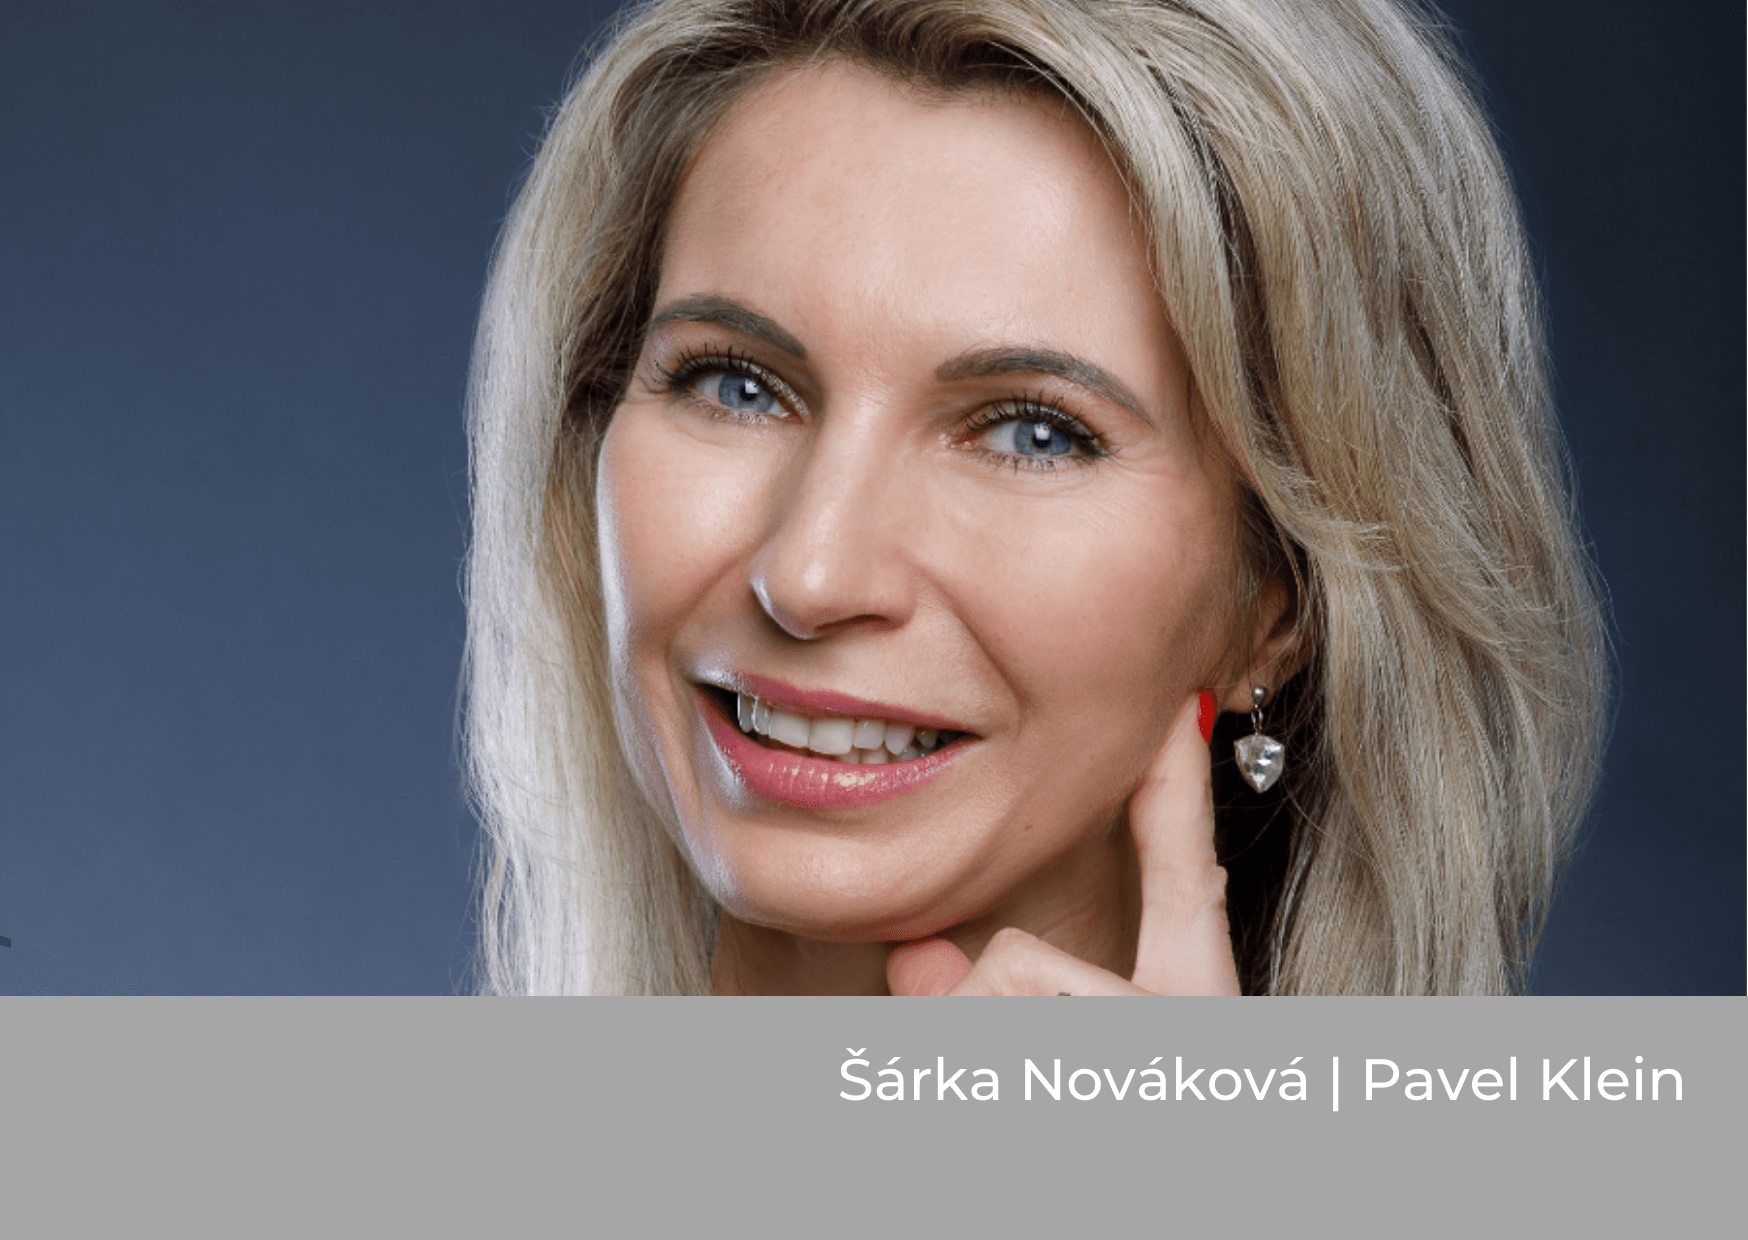 Šárka Nováková host V křesle byznysu